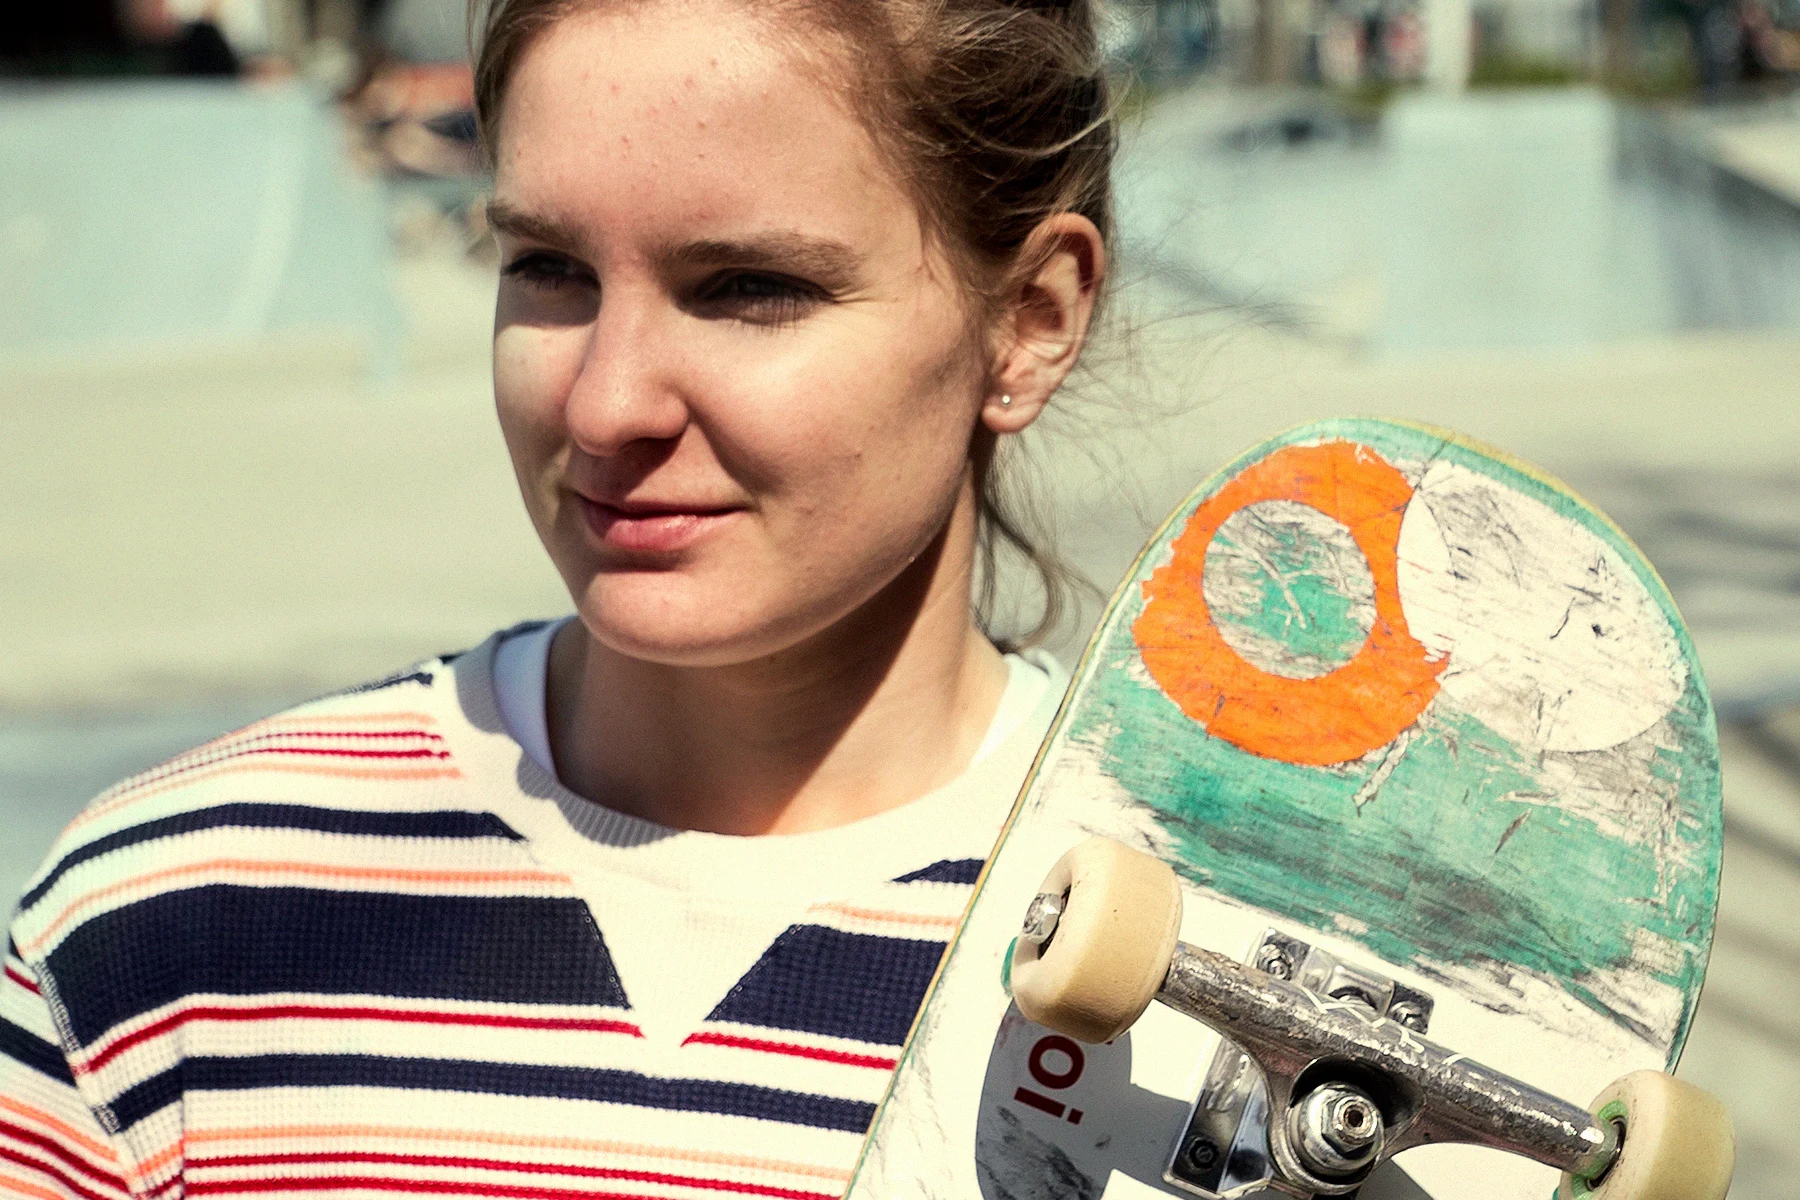 Olympisch skateboardster Roos Zwetsloot geeft kijkje in haar leven in mini-docu Commit